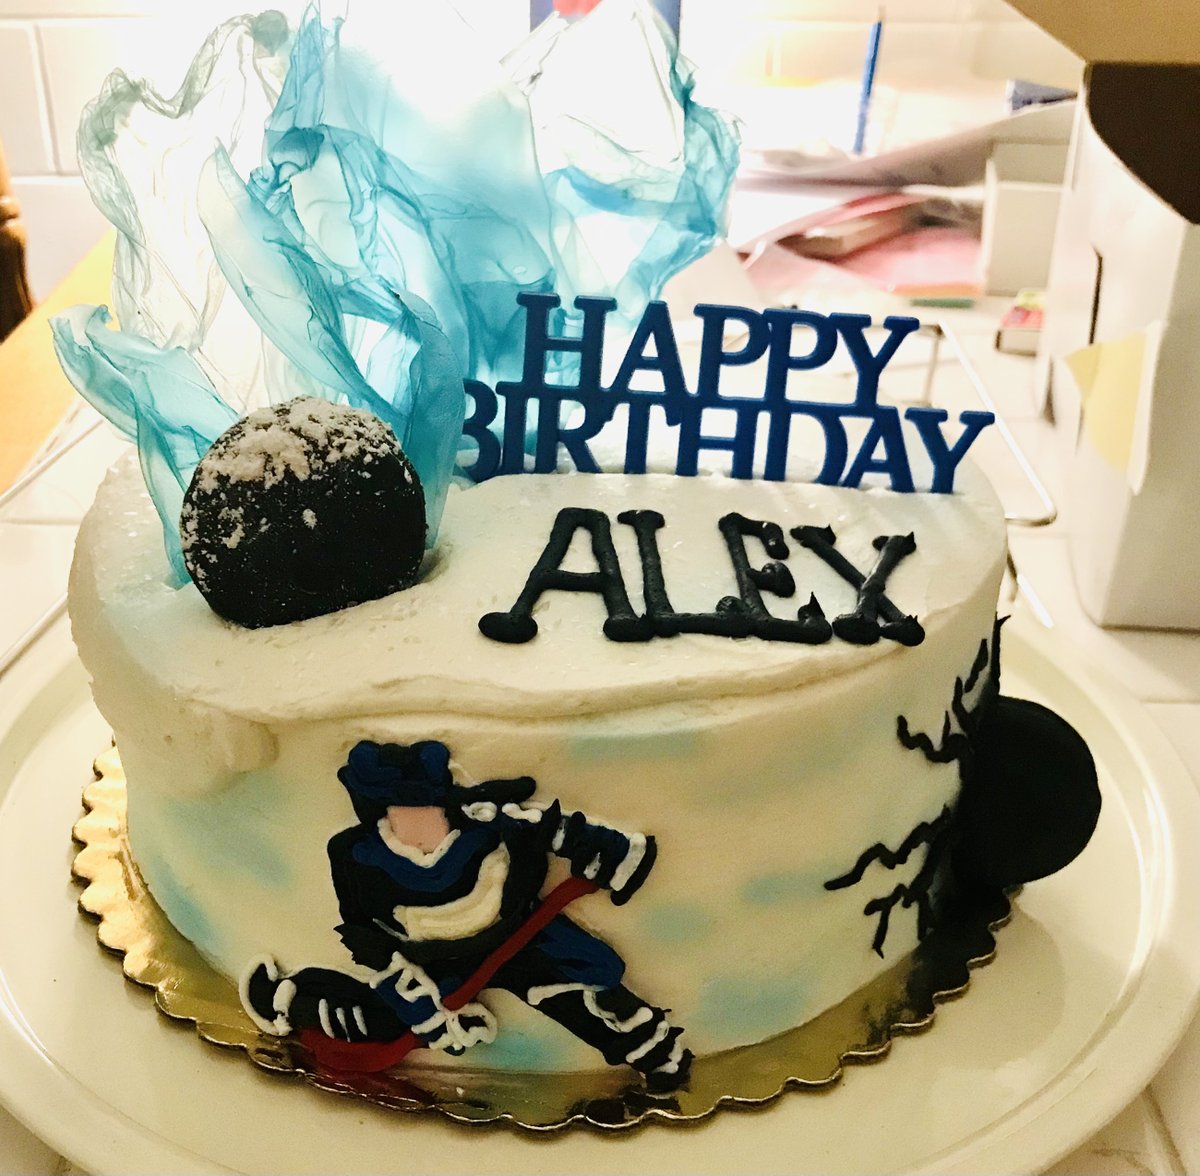 yay! #happybirthdaycake #hockey #hockeychamps #cake #cakedecorating #CakeCakeCake #hockeycake #cakes #birthday #cakedecor #decor #decorate #art #edibleart